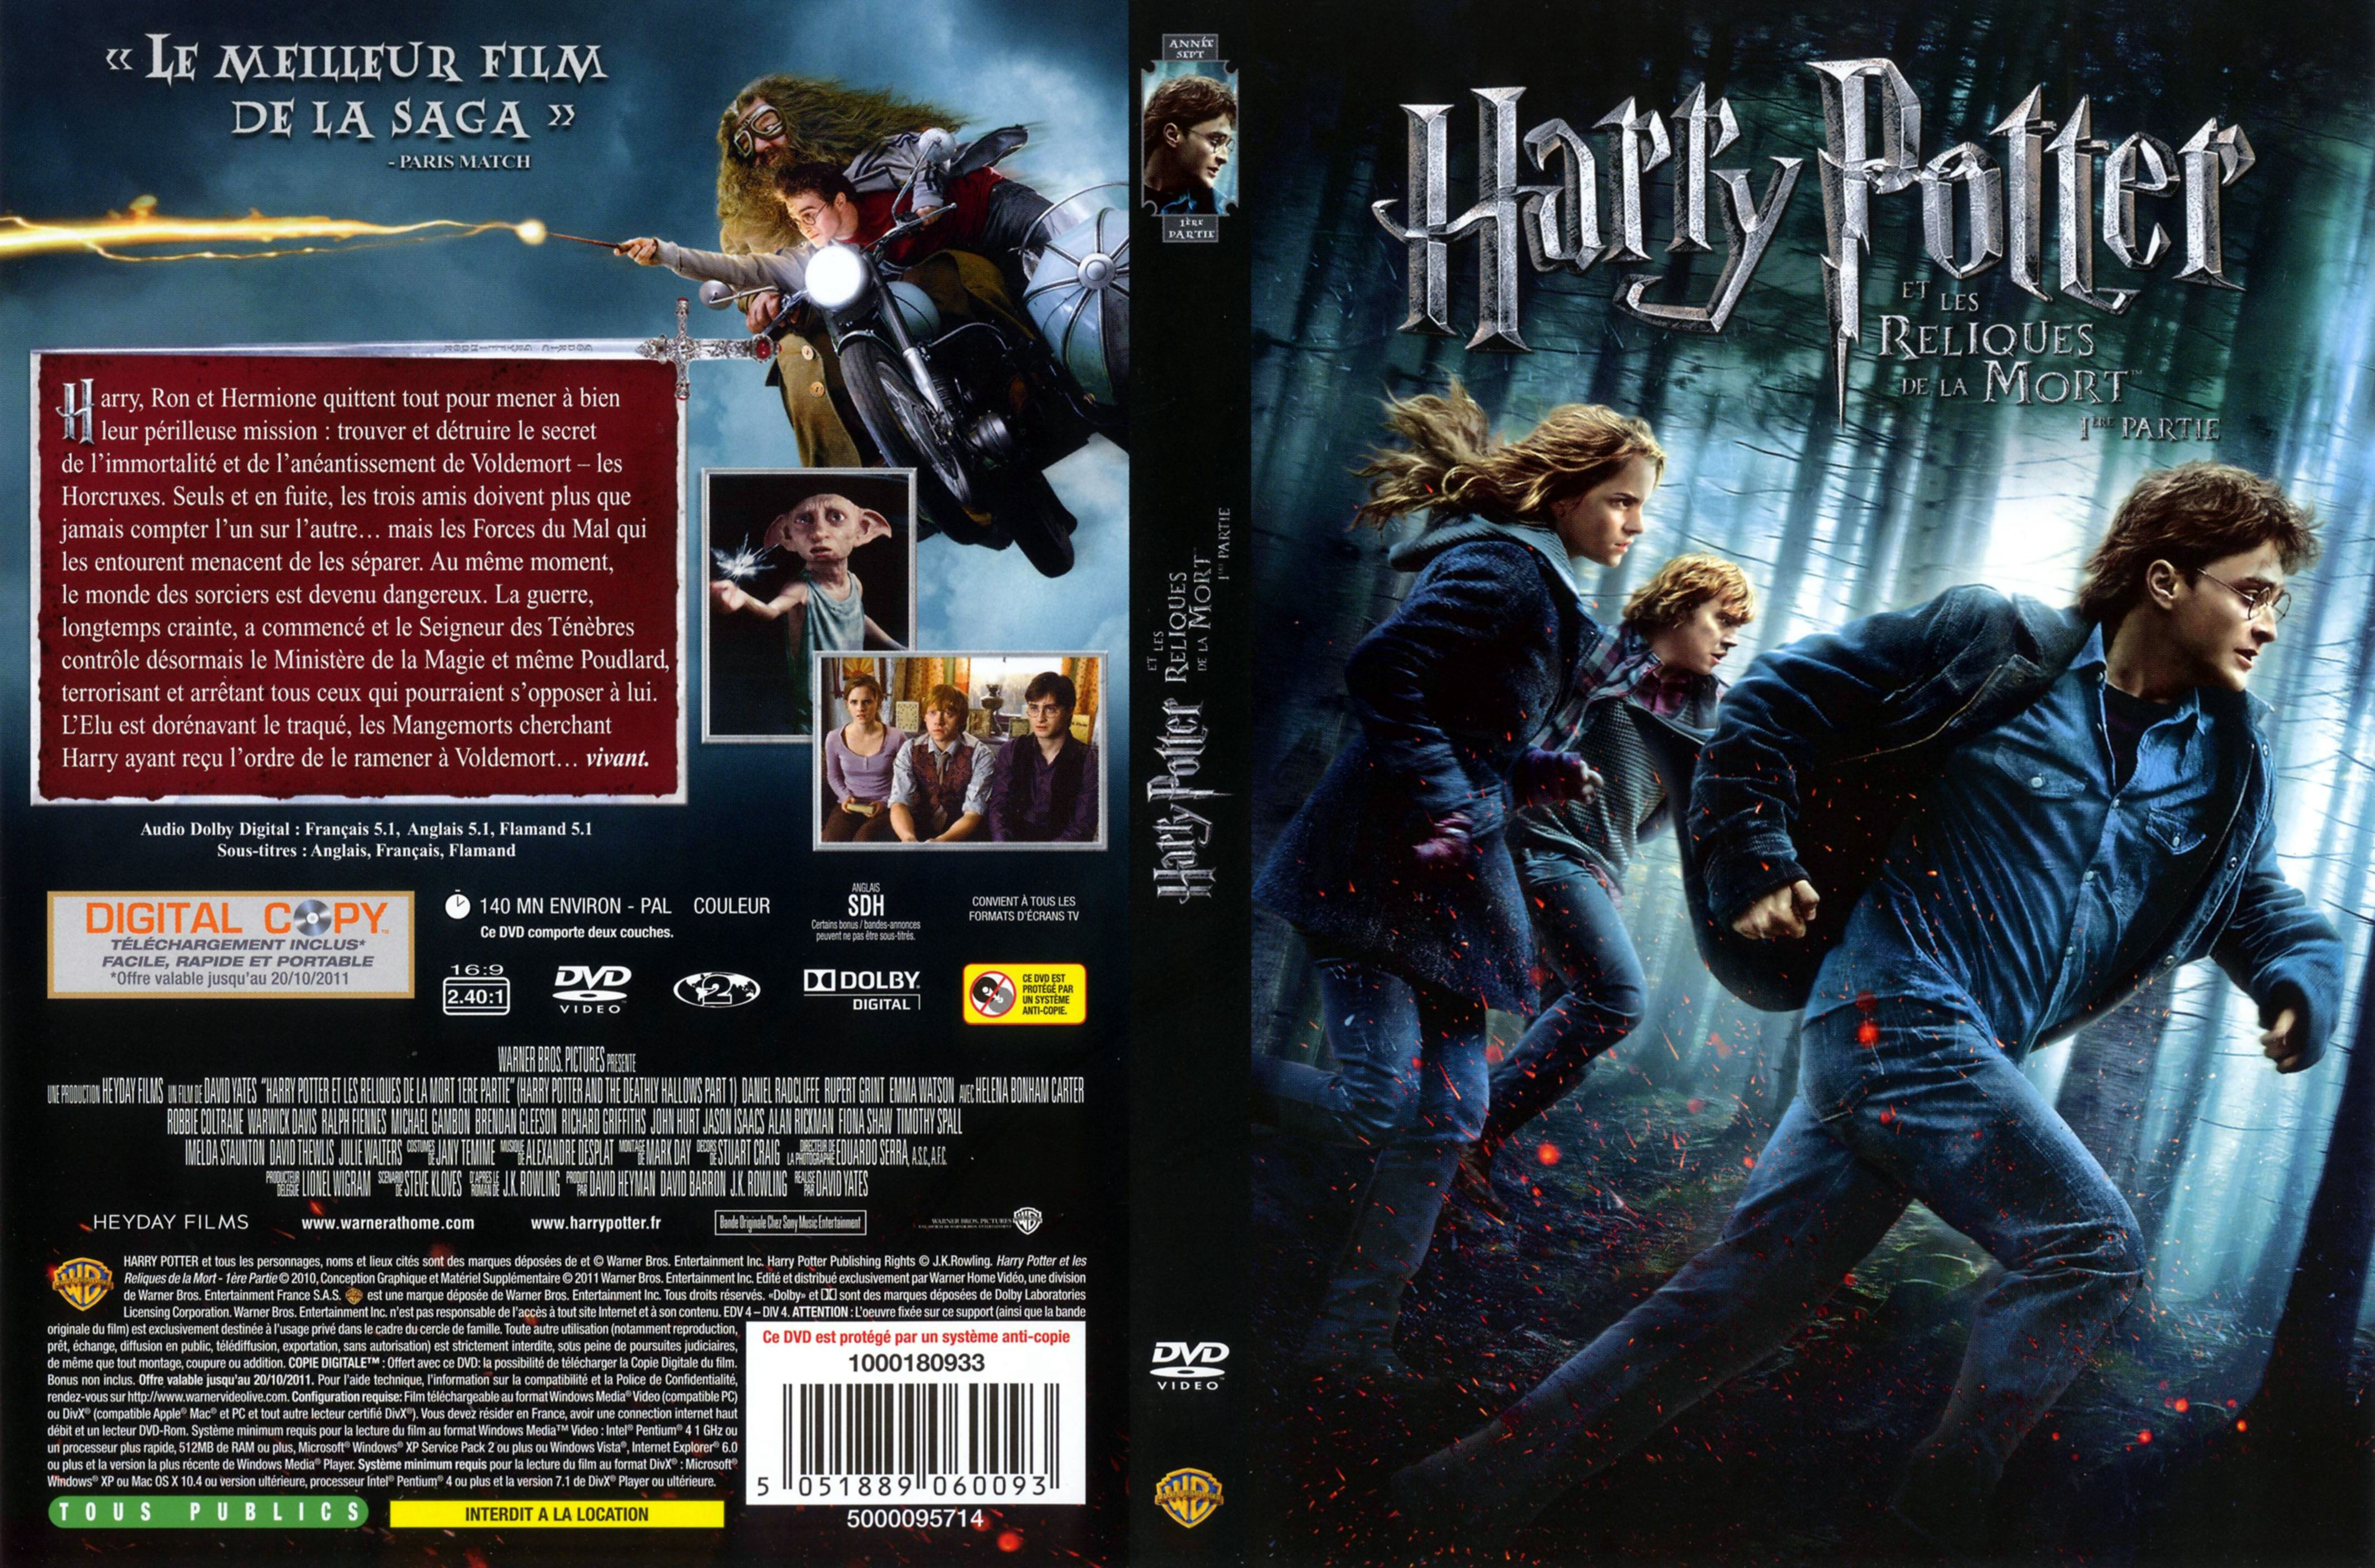 Jaquette DVD Harry Potter et les reliques de la mort - 1re partie v3